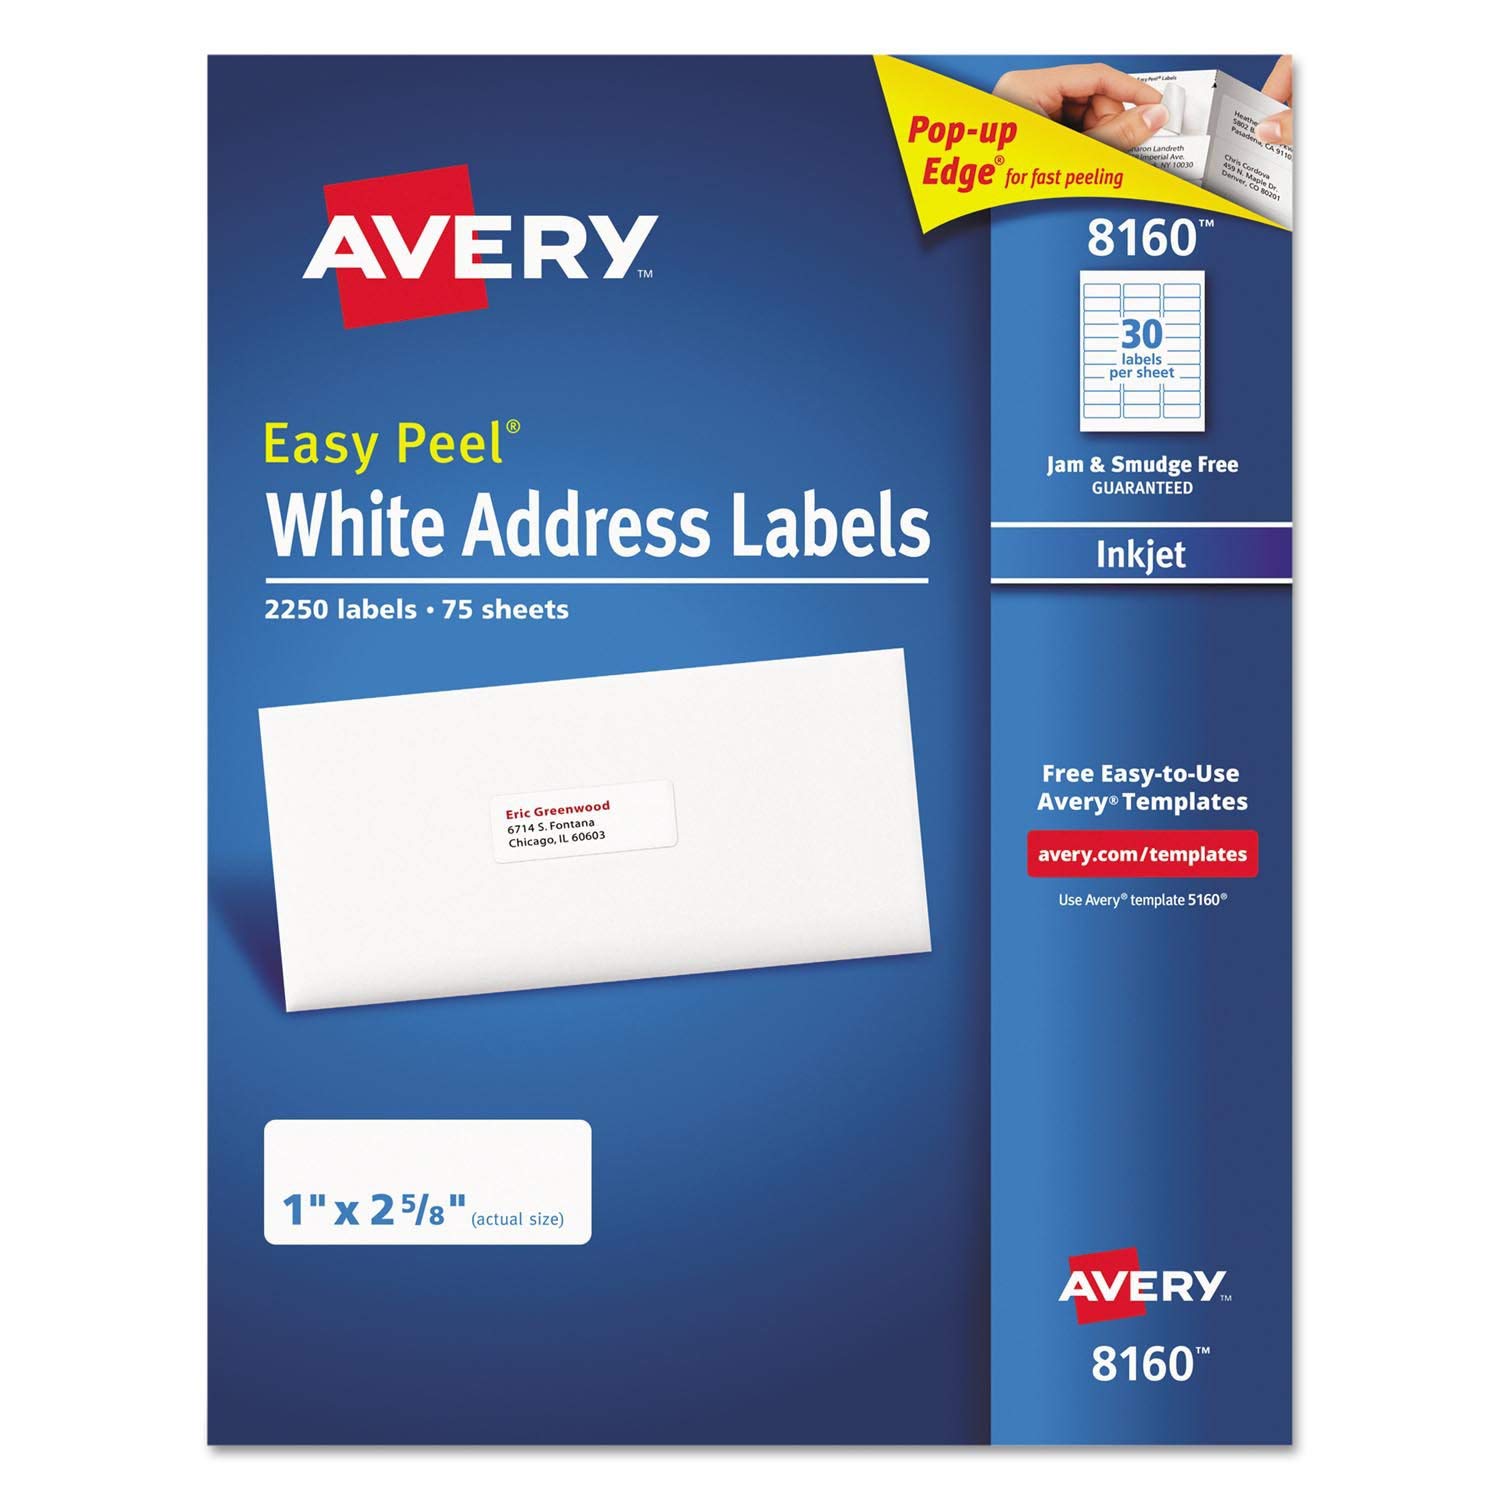 Avery 8160 Easy Peel Address Labels, 30 per Sheet, Inkjet, White, 2250